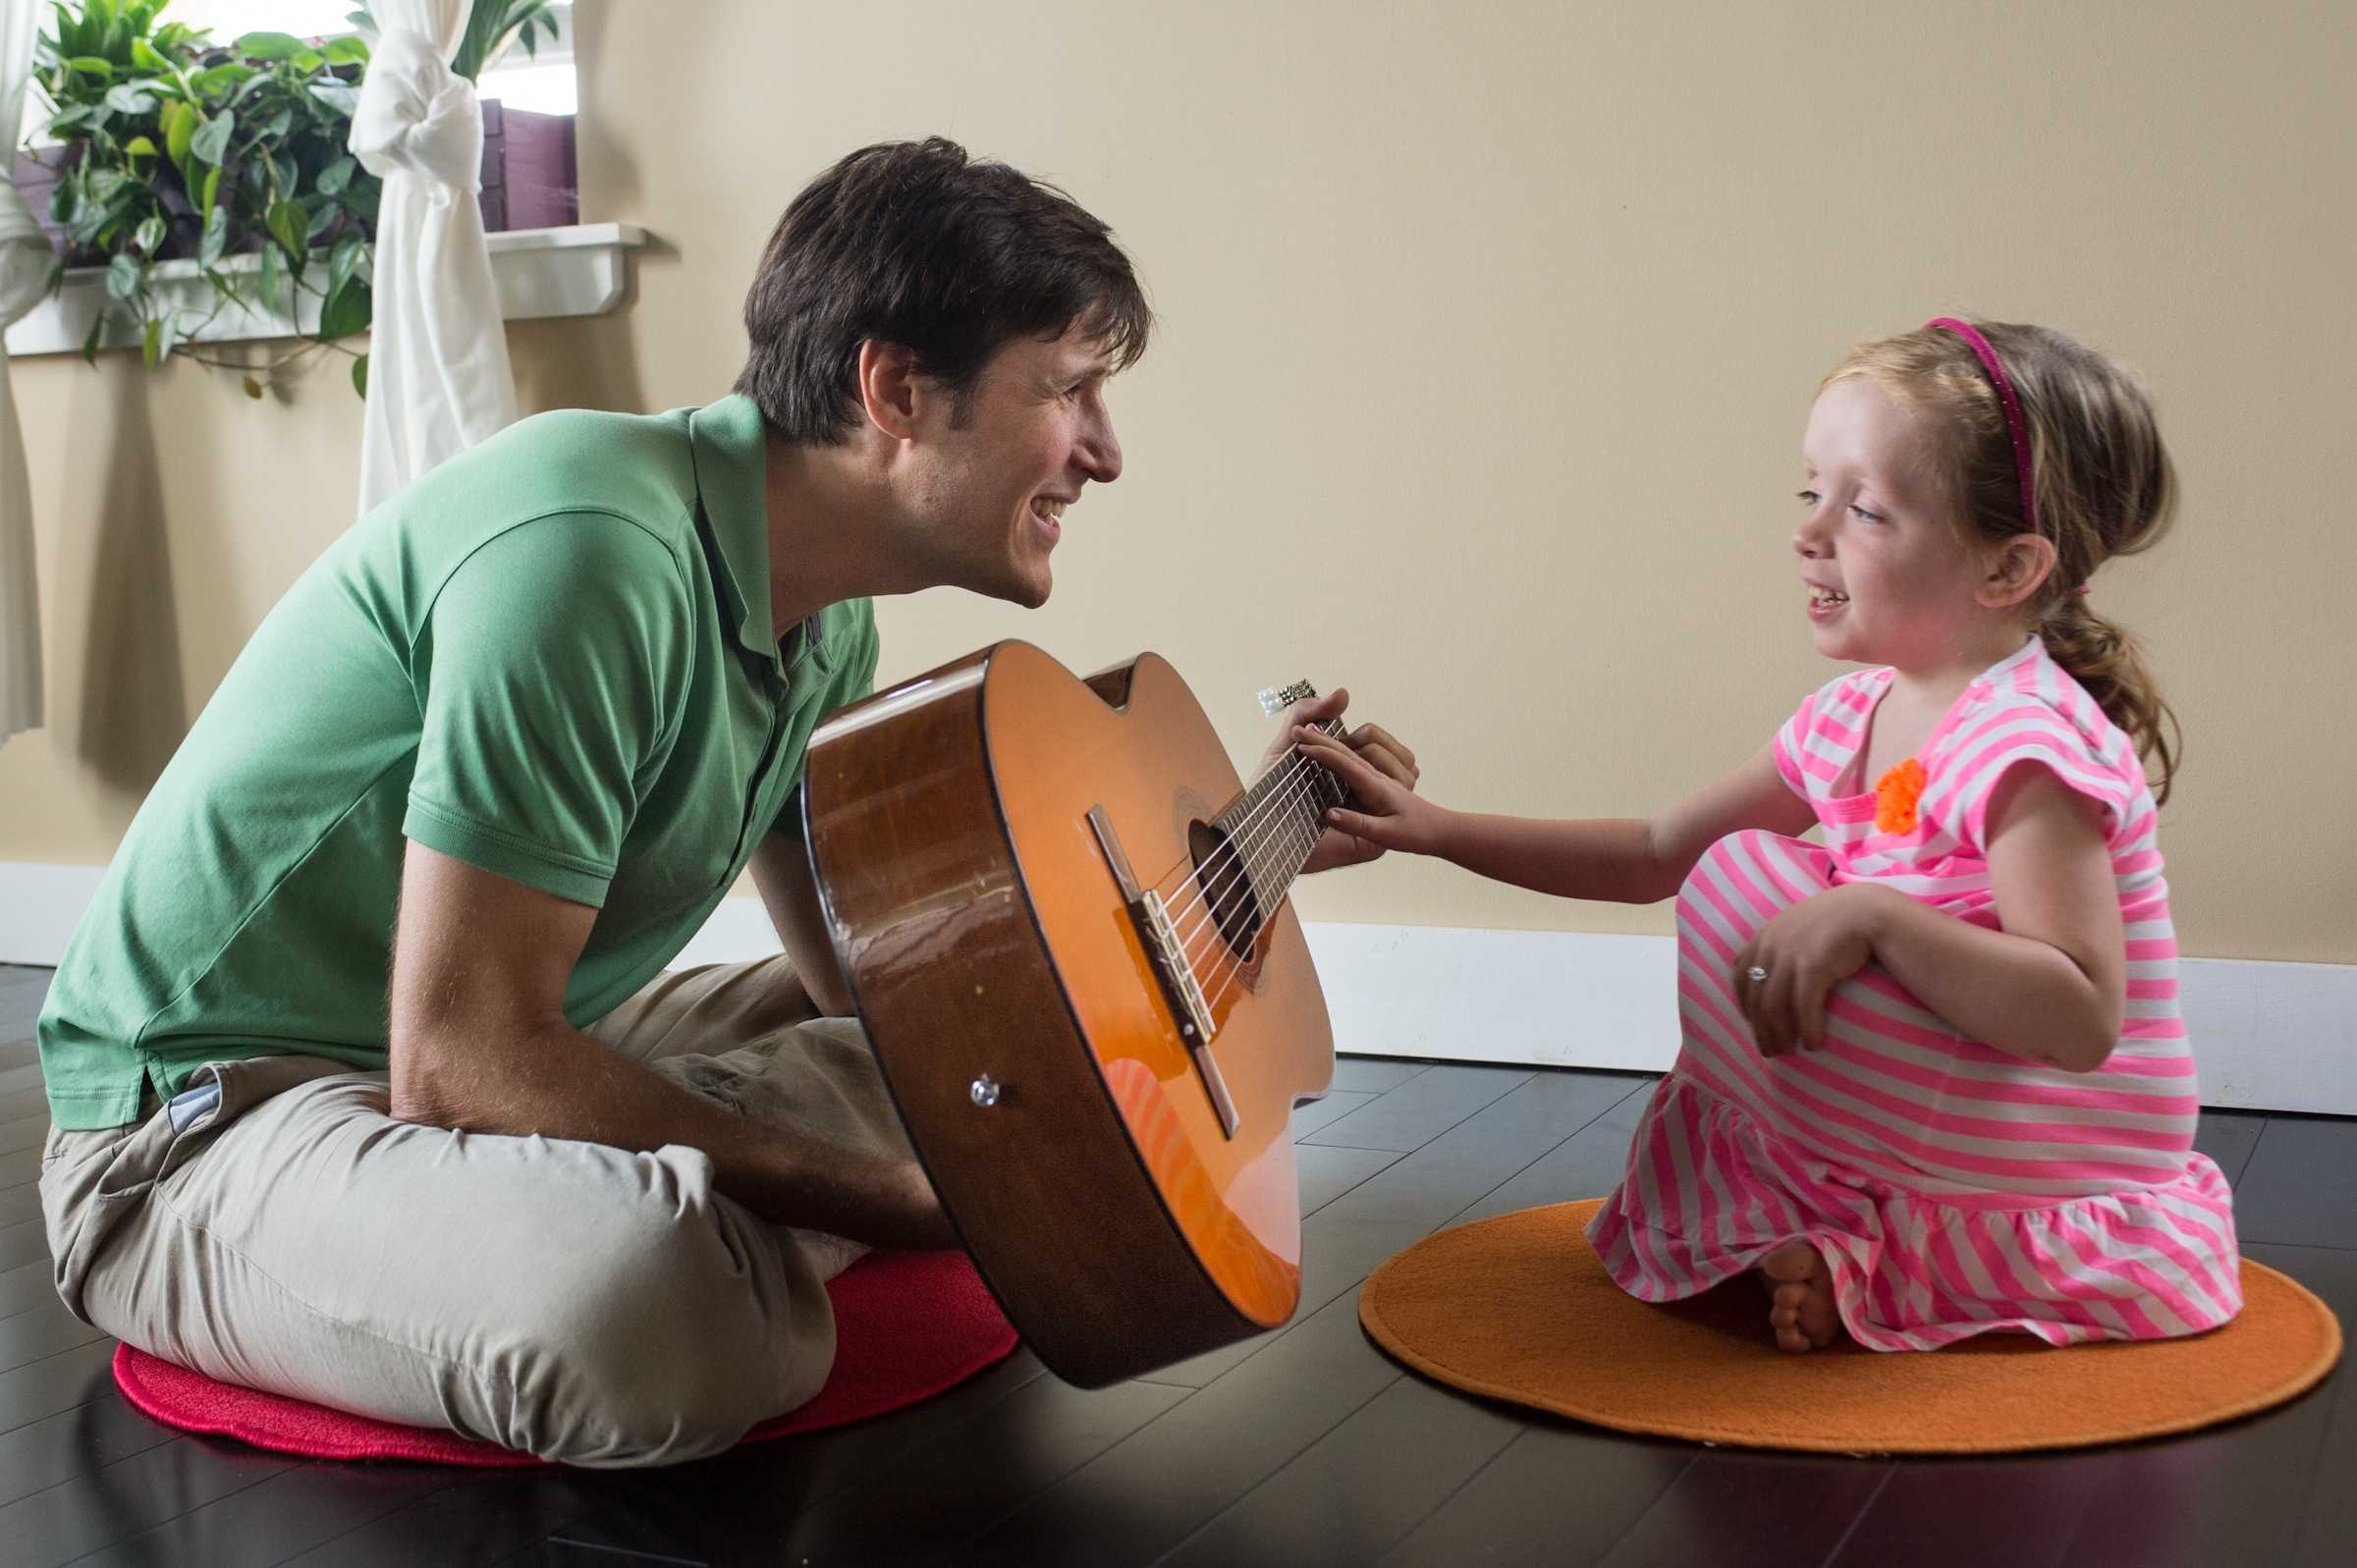 Игры использующие музыку. Рецептивная Музыкотерапия. Музыкальные инструменты для детей. Музыкальная терапия. Музыкальная терапия для детей.